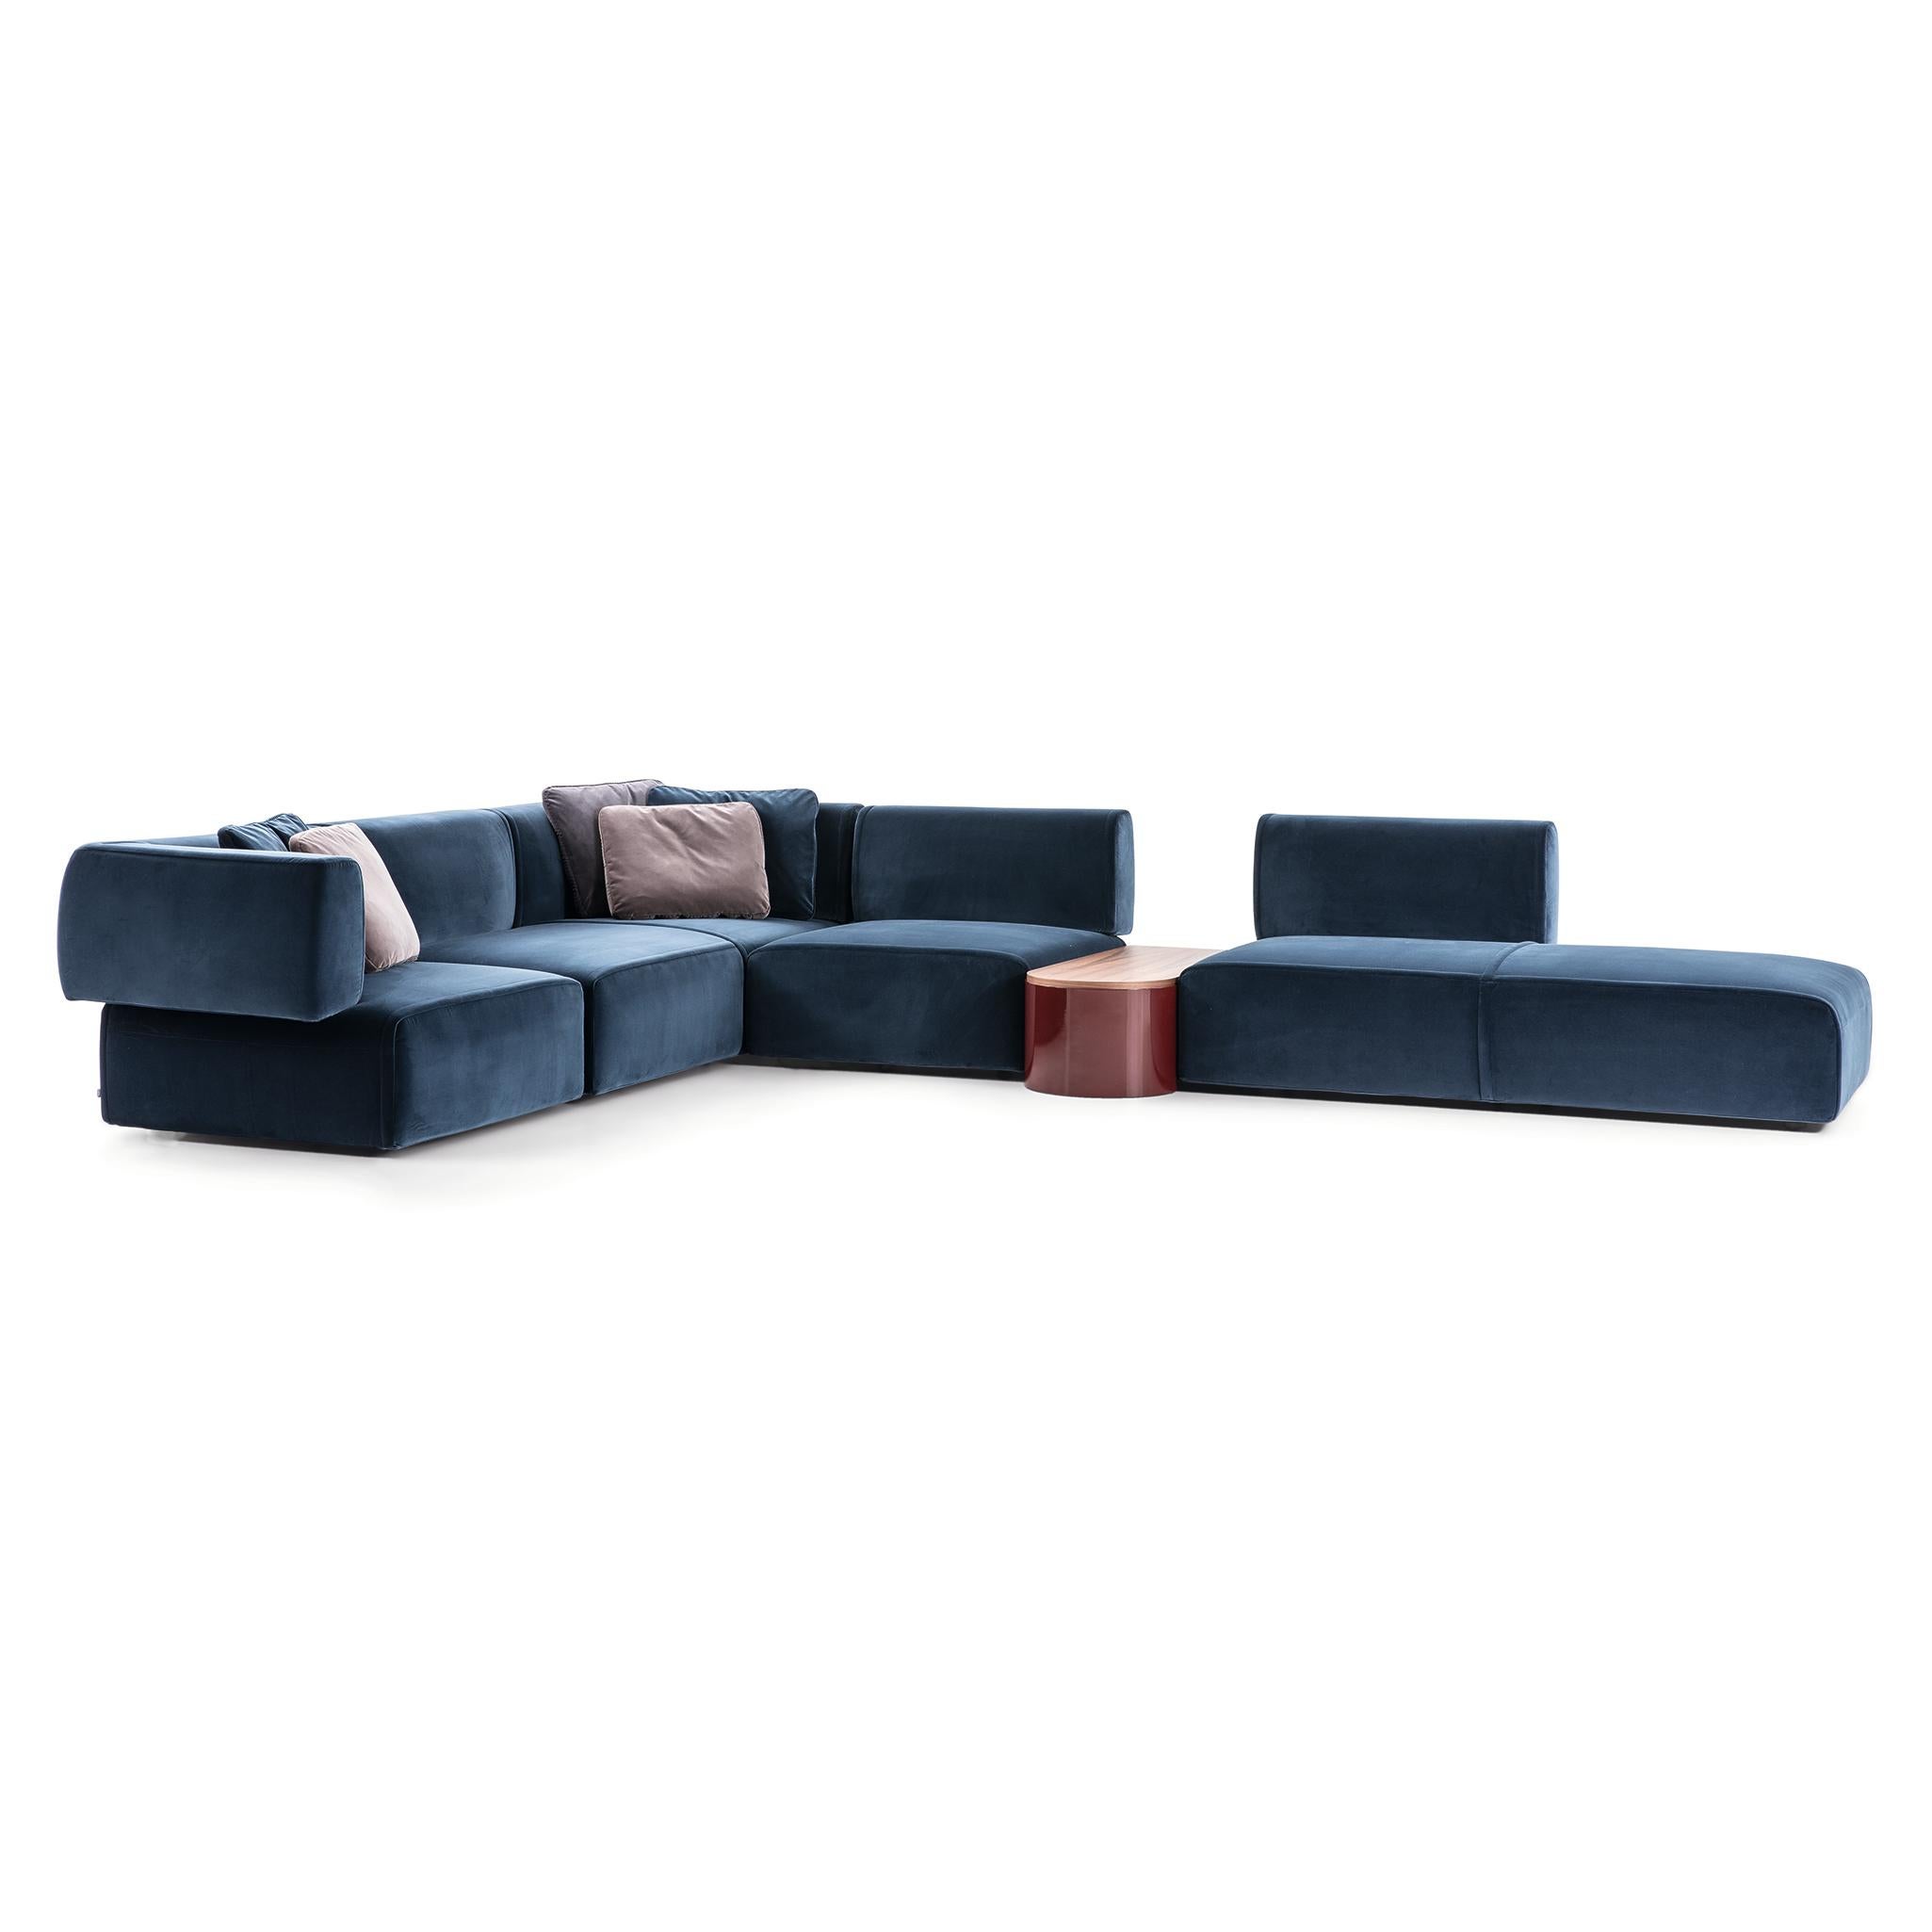 Modulares Sofa, entworfen von Patricia Urquiola im Jahr 2018. Hergestellt von Cassina in Italien.

Ein erfindungsreiches modulares Sofa mit weichen, einladenden Kurven, die höchsten Komfort und extreme Vielseitigkeit versprechen. Die abgerundeten